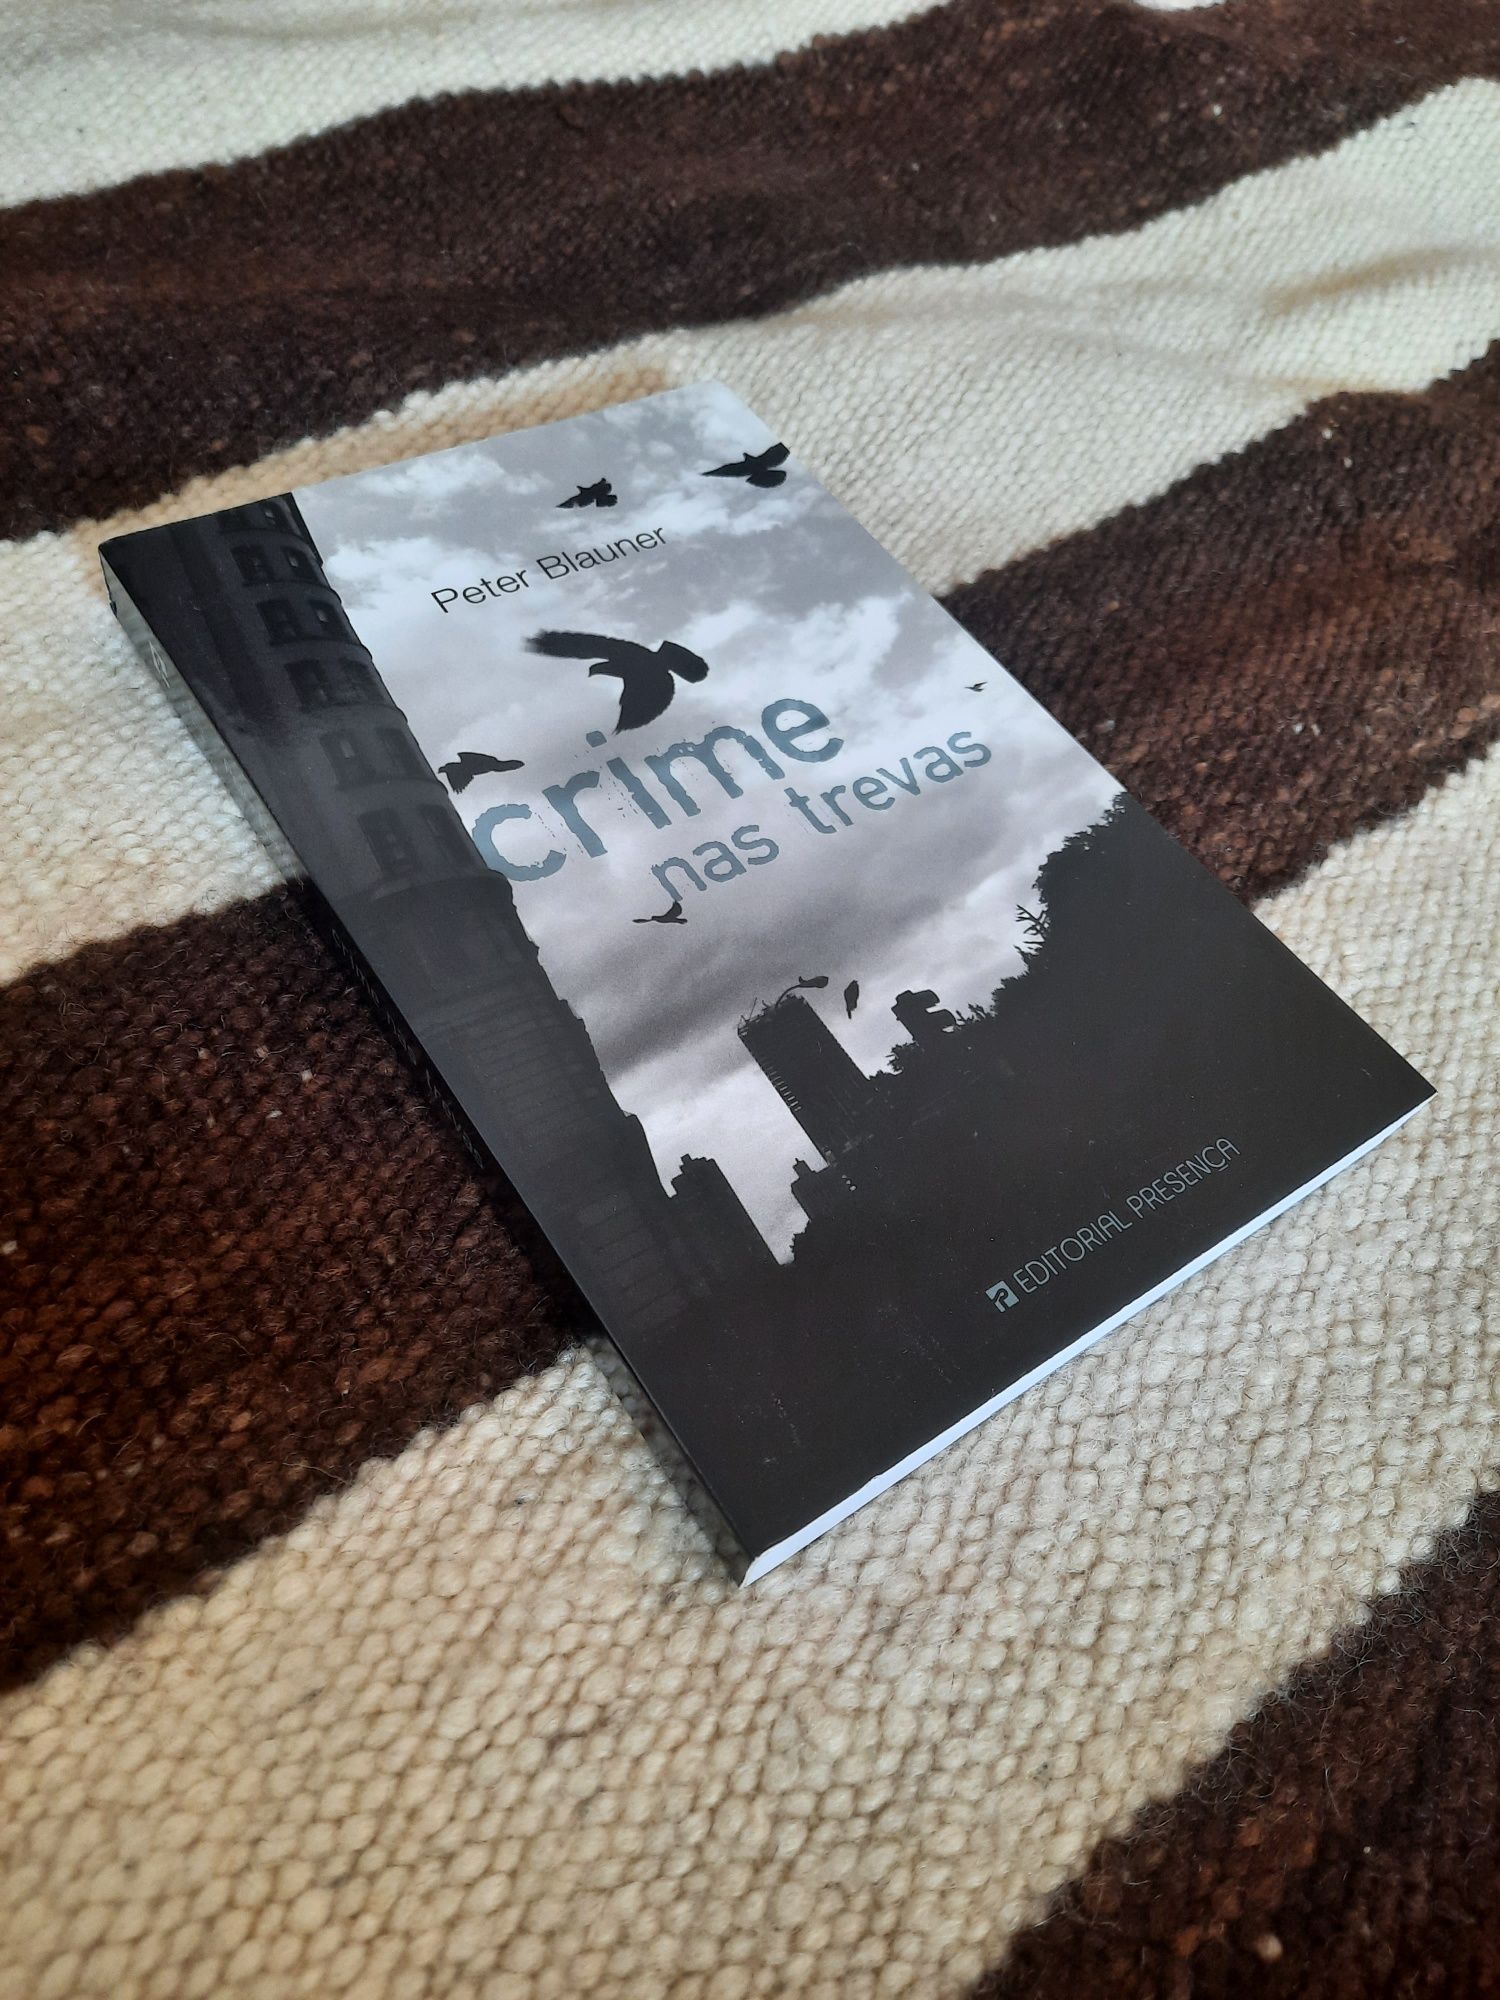 Livro "Crime nas Trevas", de Peter Blauner